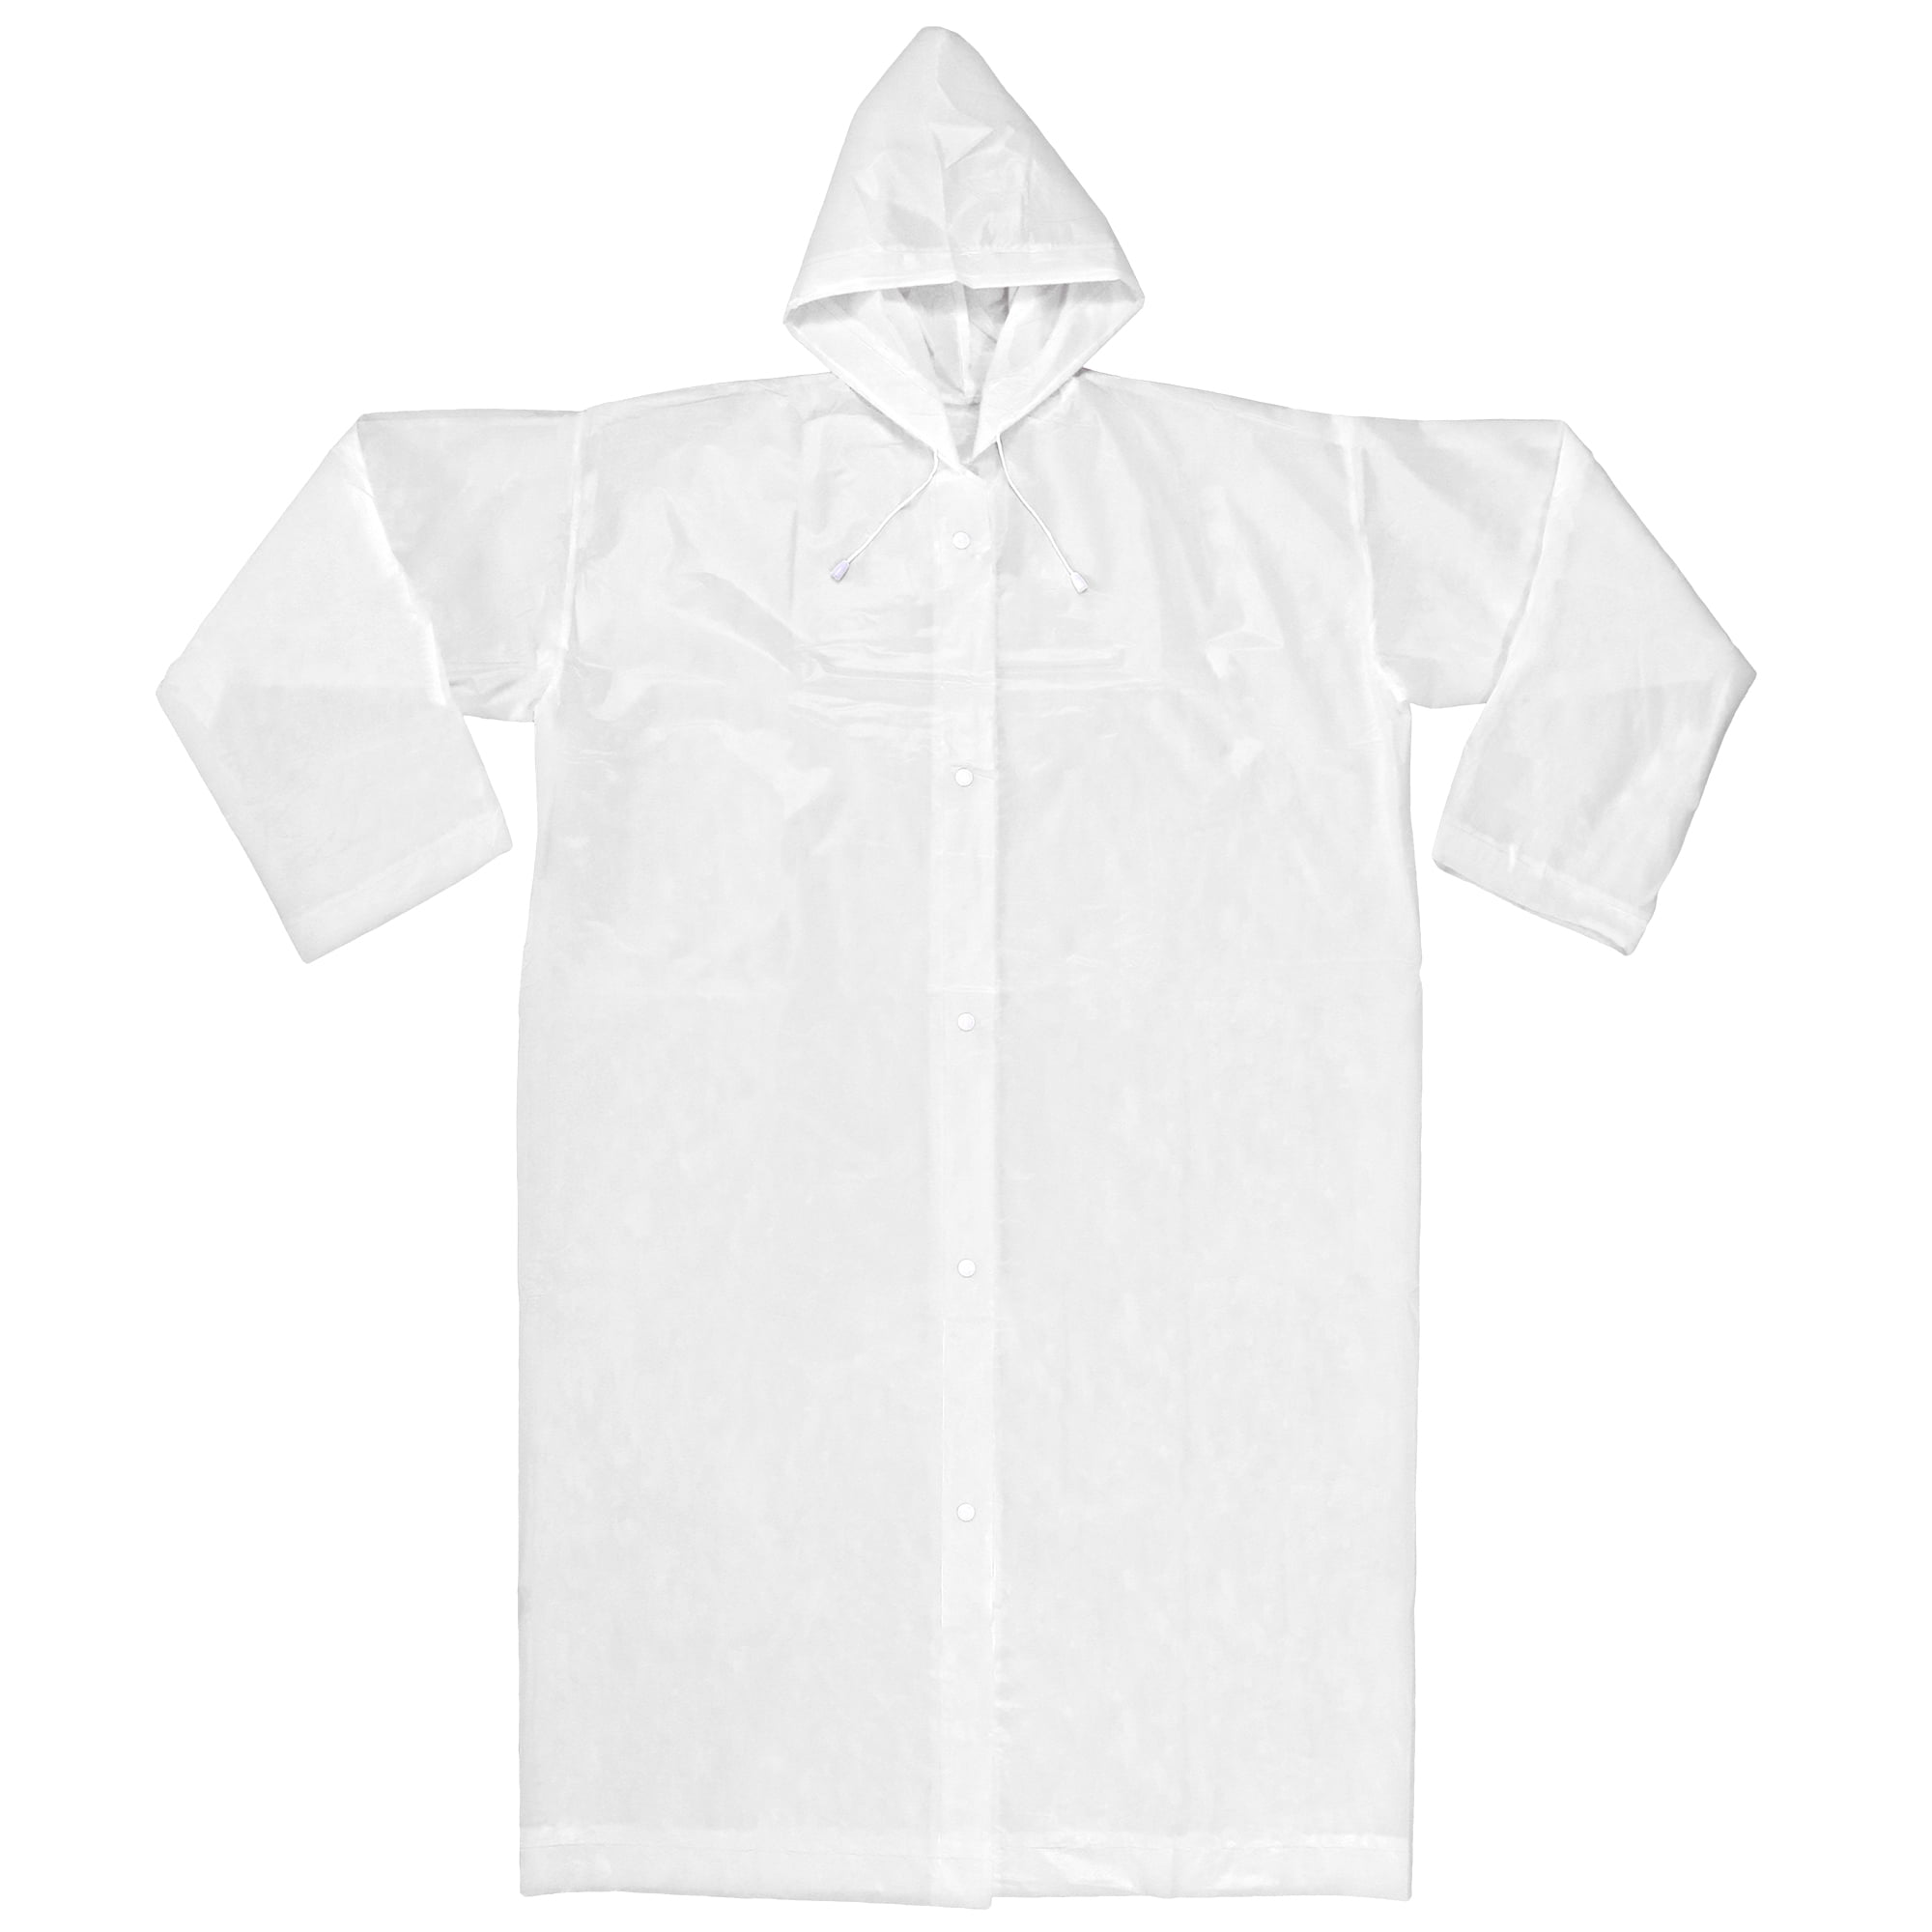 XXX-Large, Navy Rain Coat for Women Men Waterproof Jacket with Pants 2Pcs Ultra-Lite Suits EVA Reusable Portable Packable